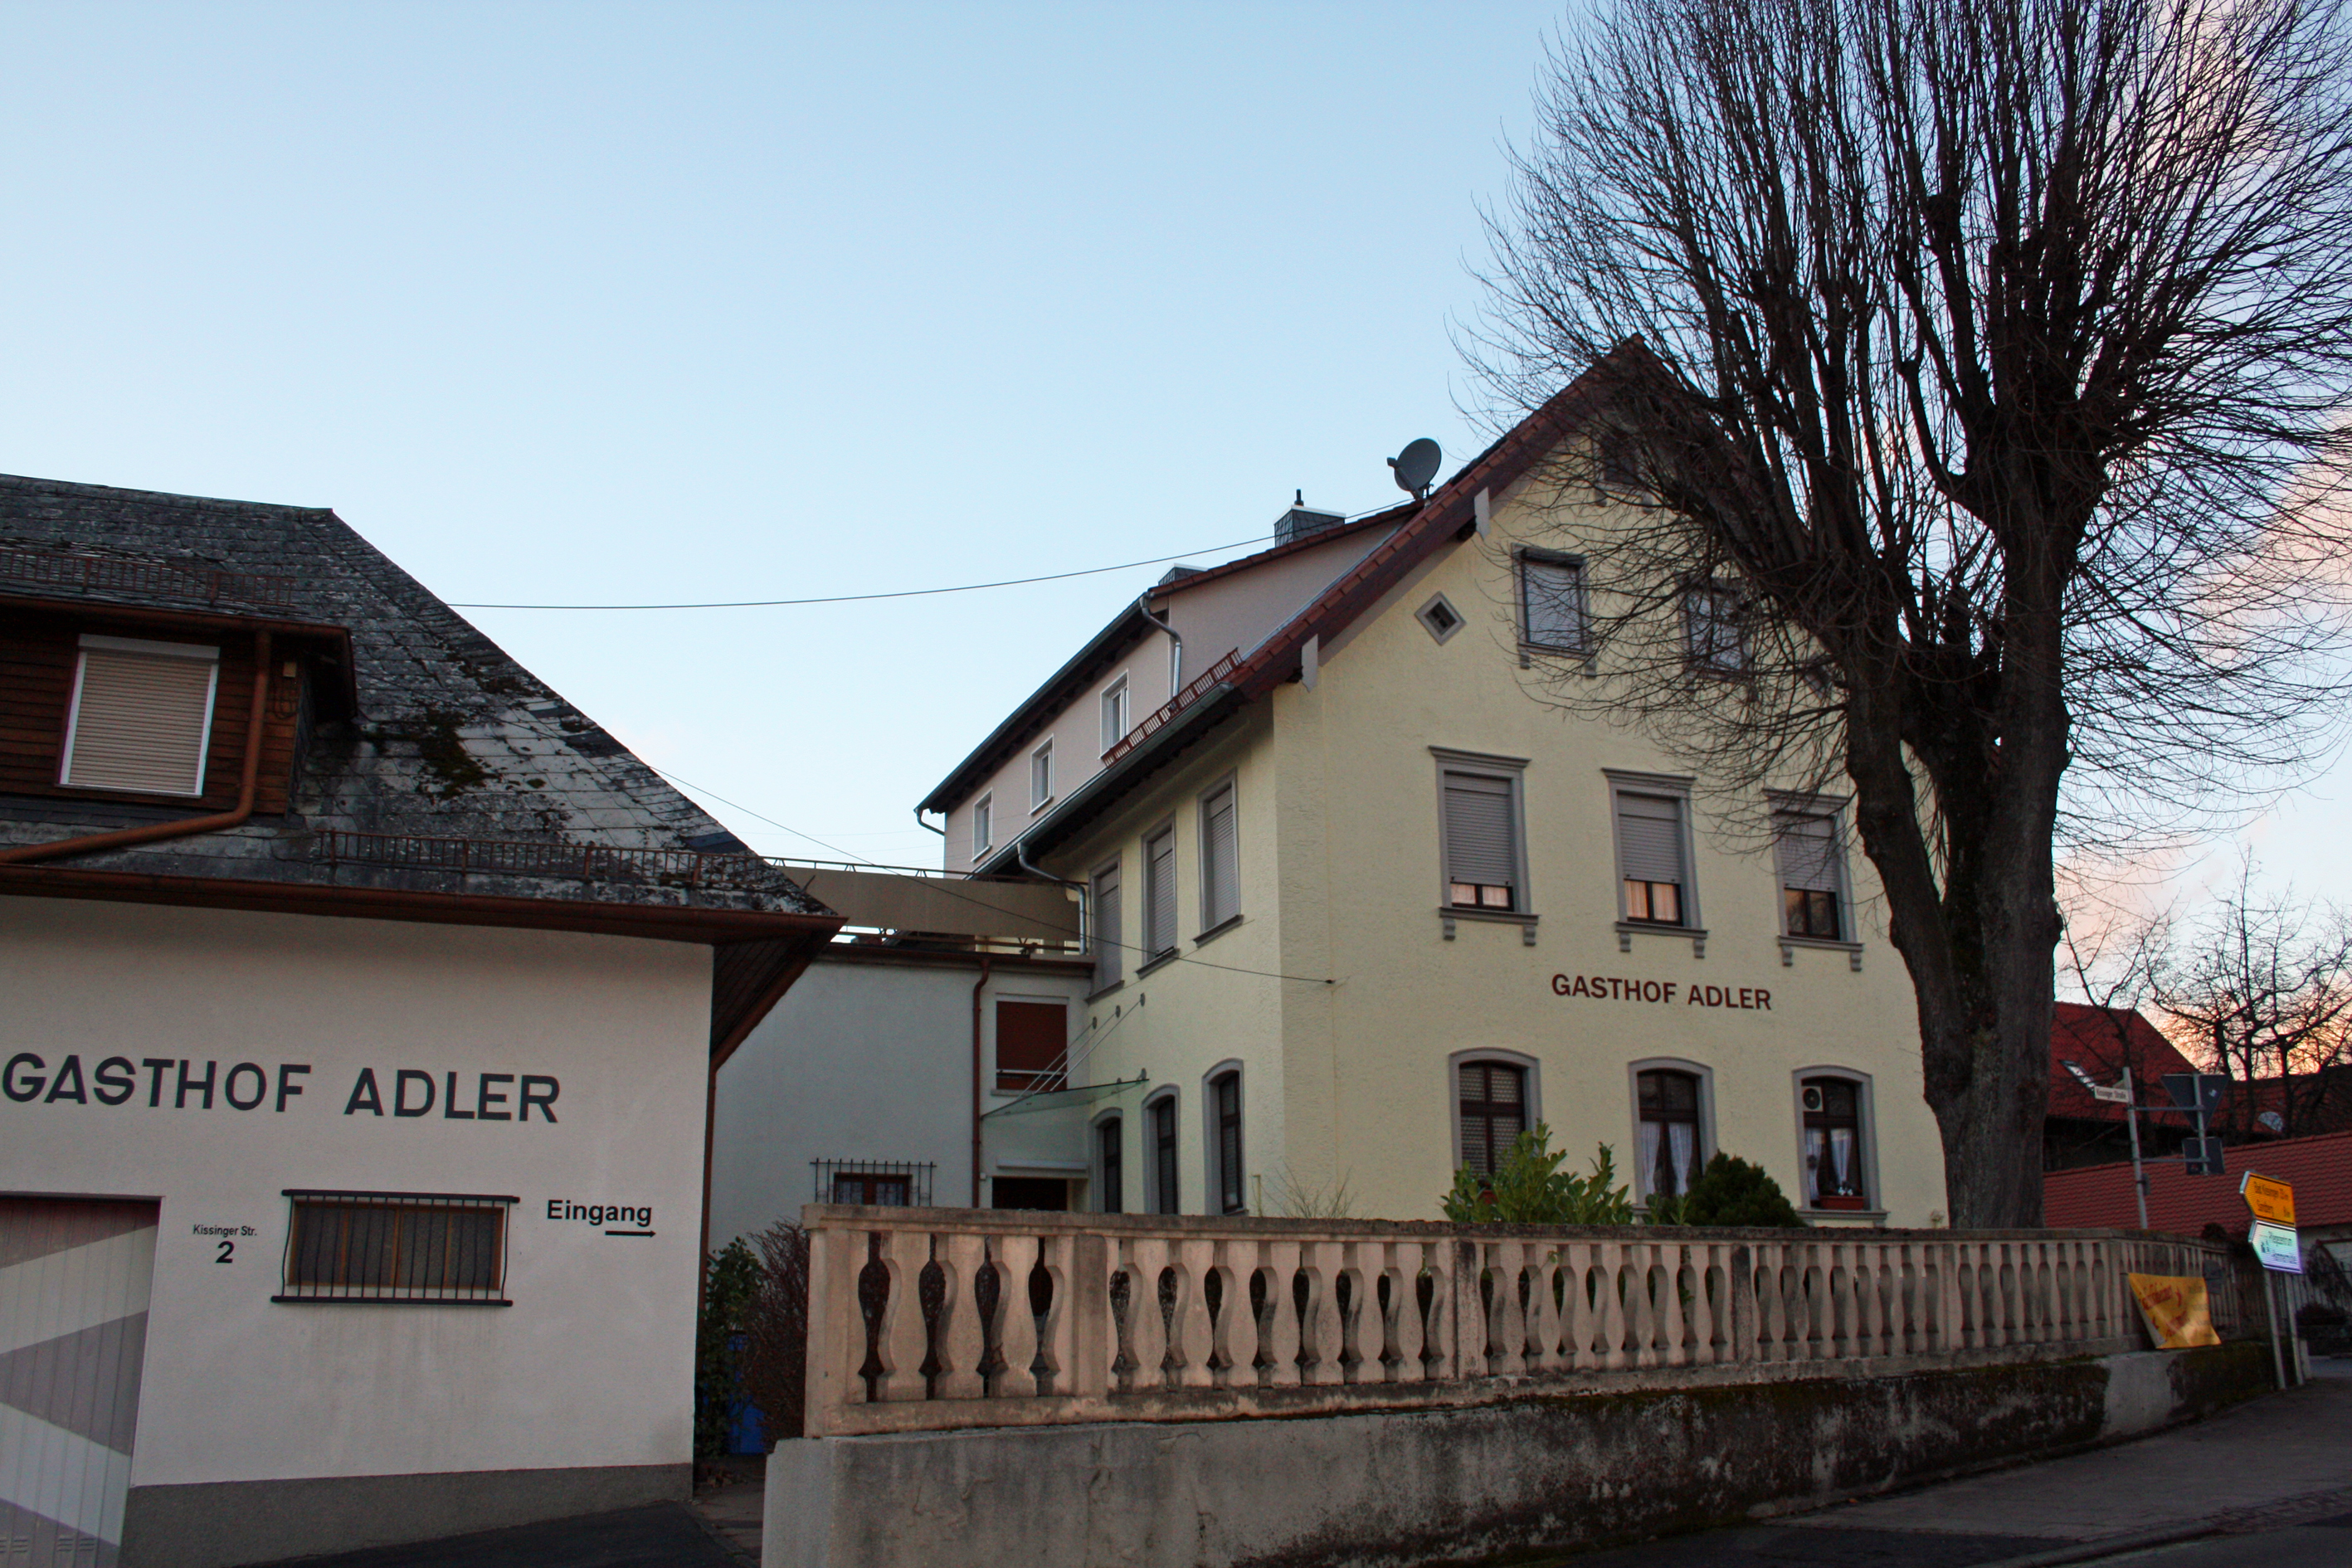 Gasthof Adler, Bischofsheim.
